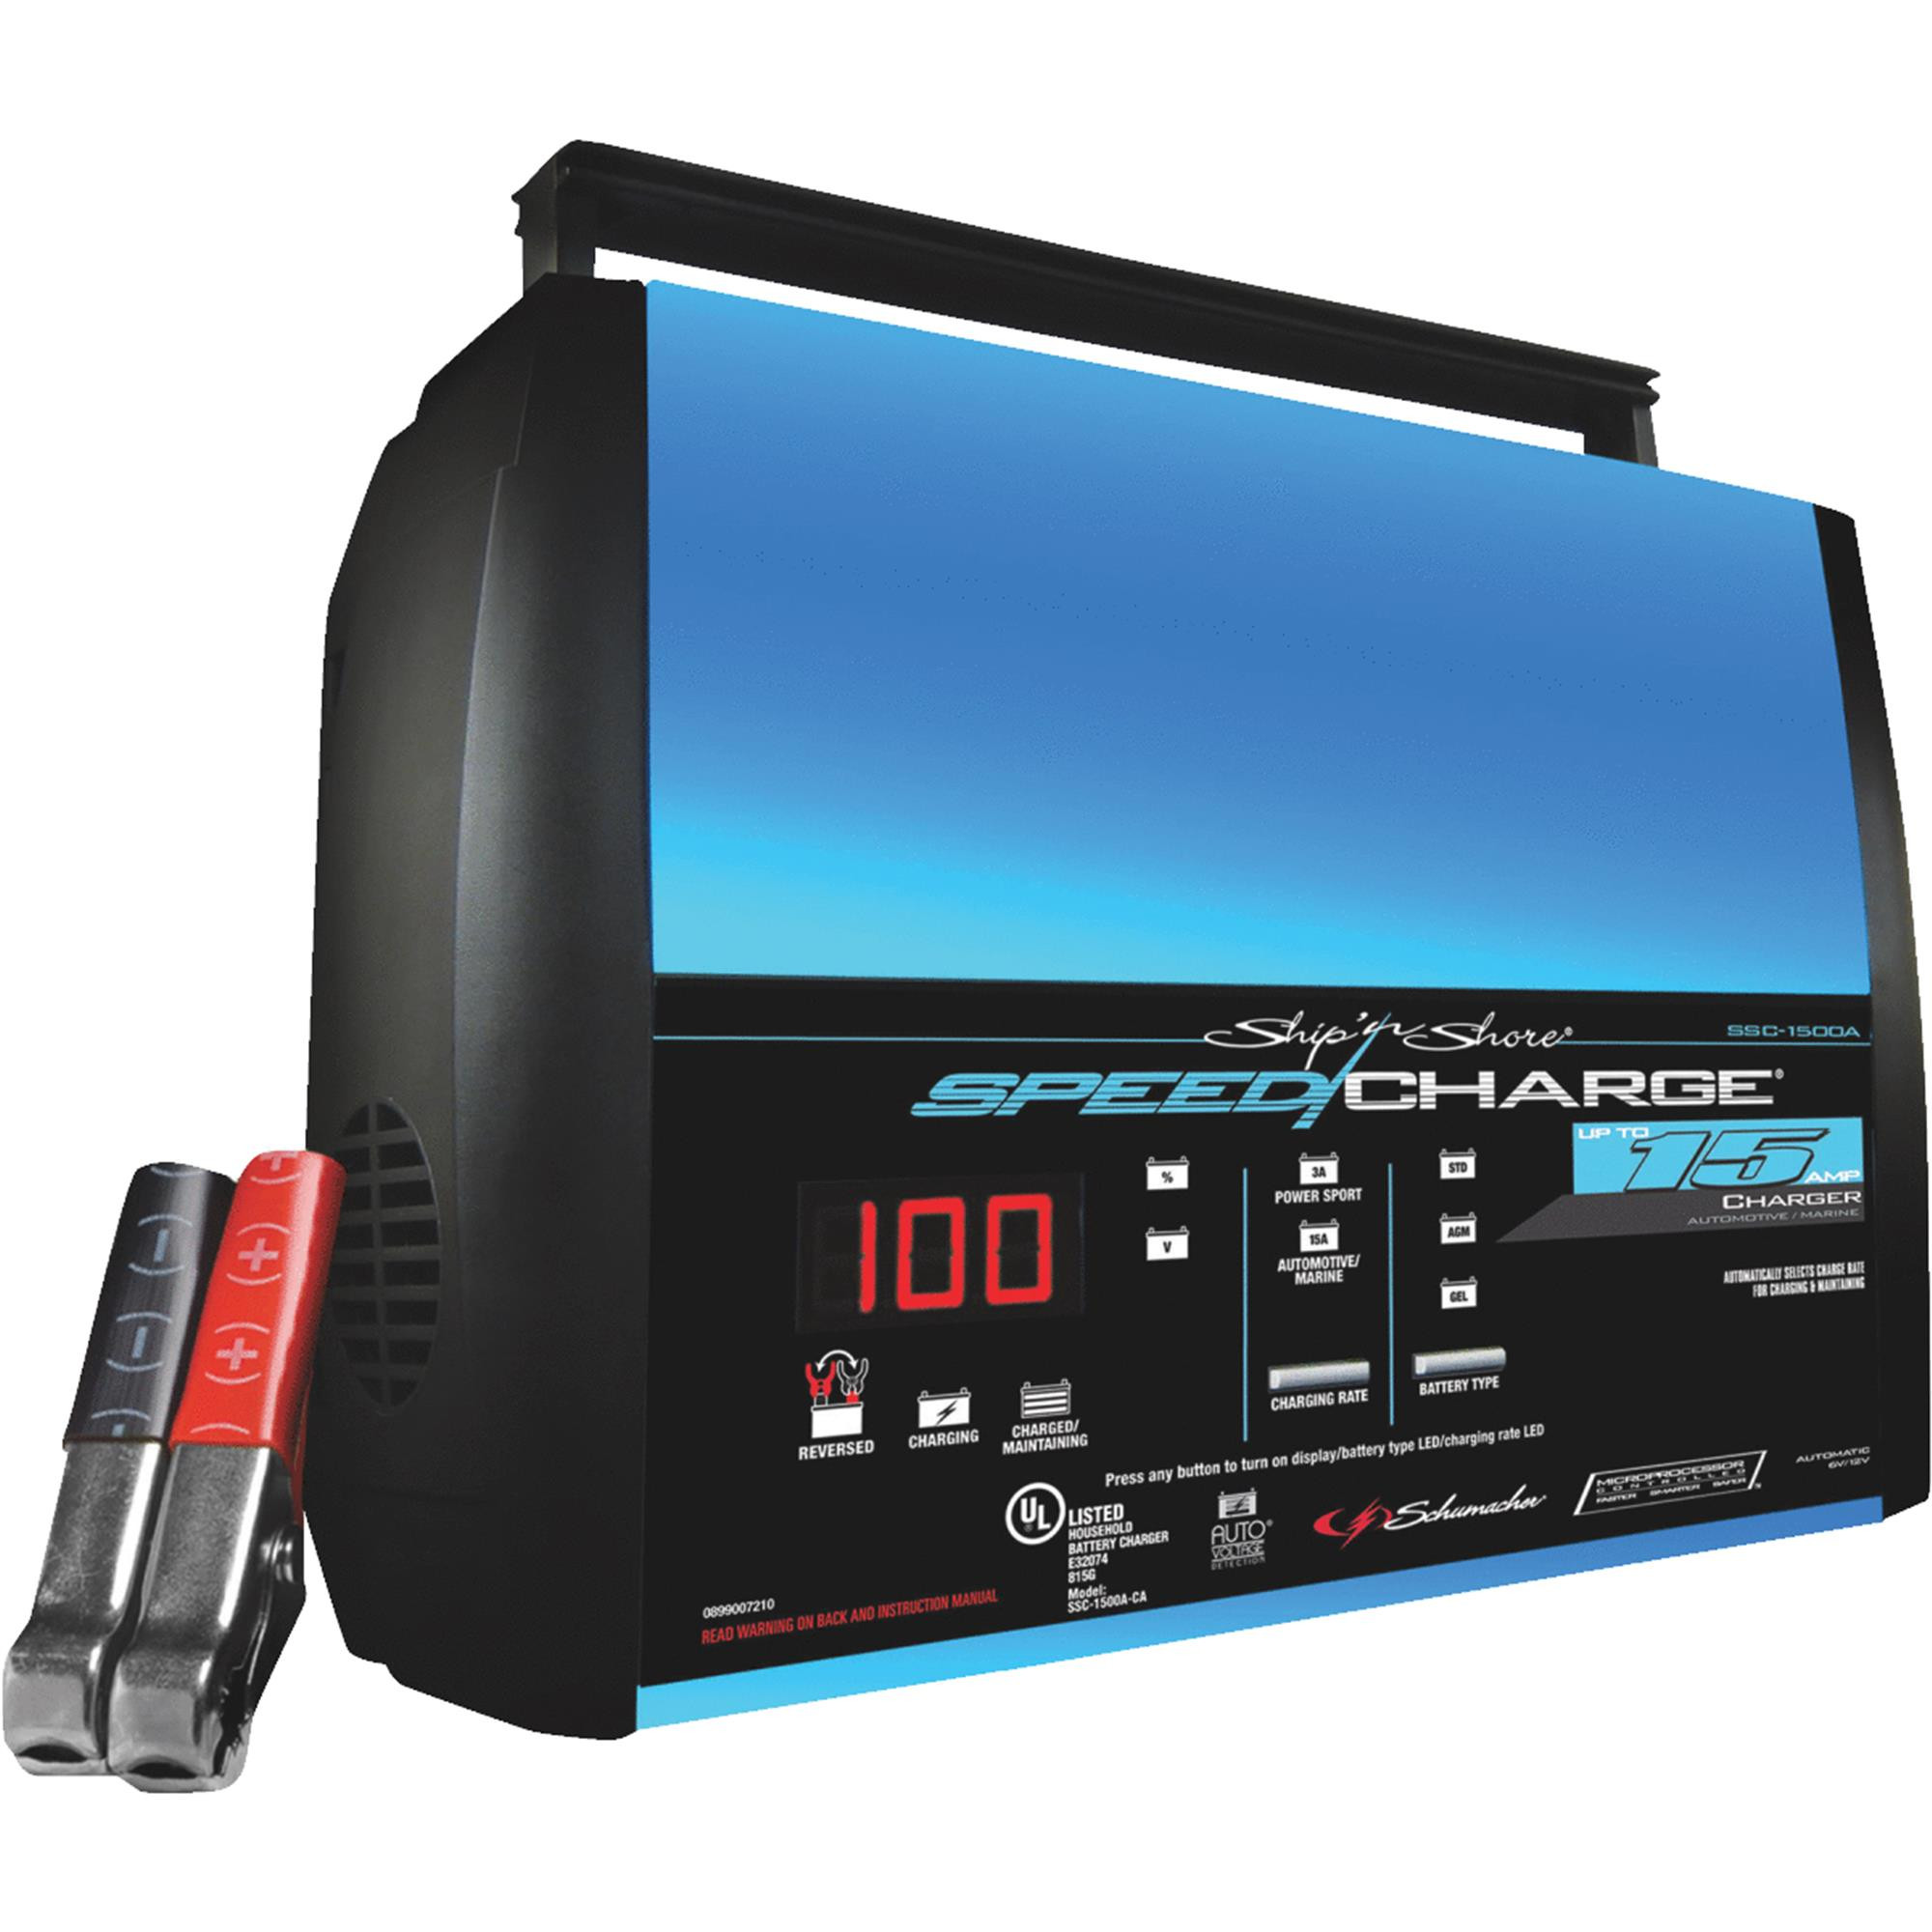 Cargador de batería Schumacher SpeedCharge, 15 amperios, para automóviles y barcos-026666708074-0